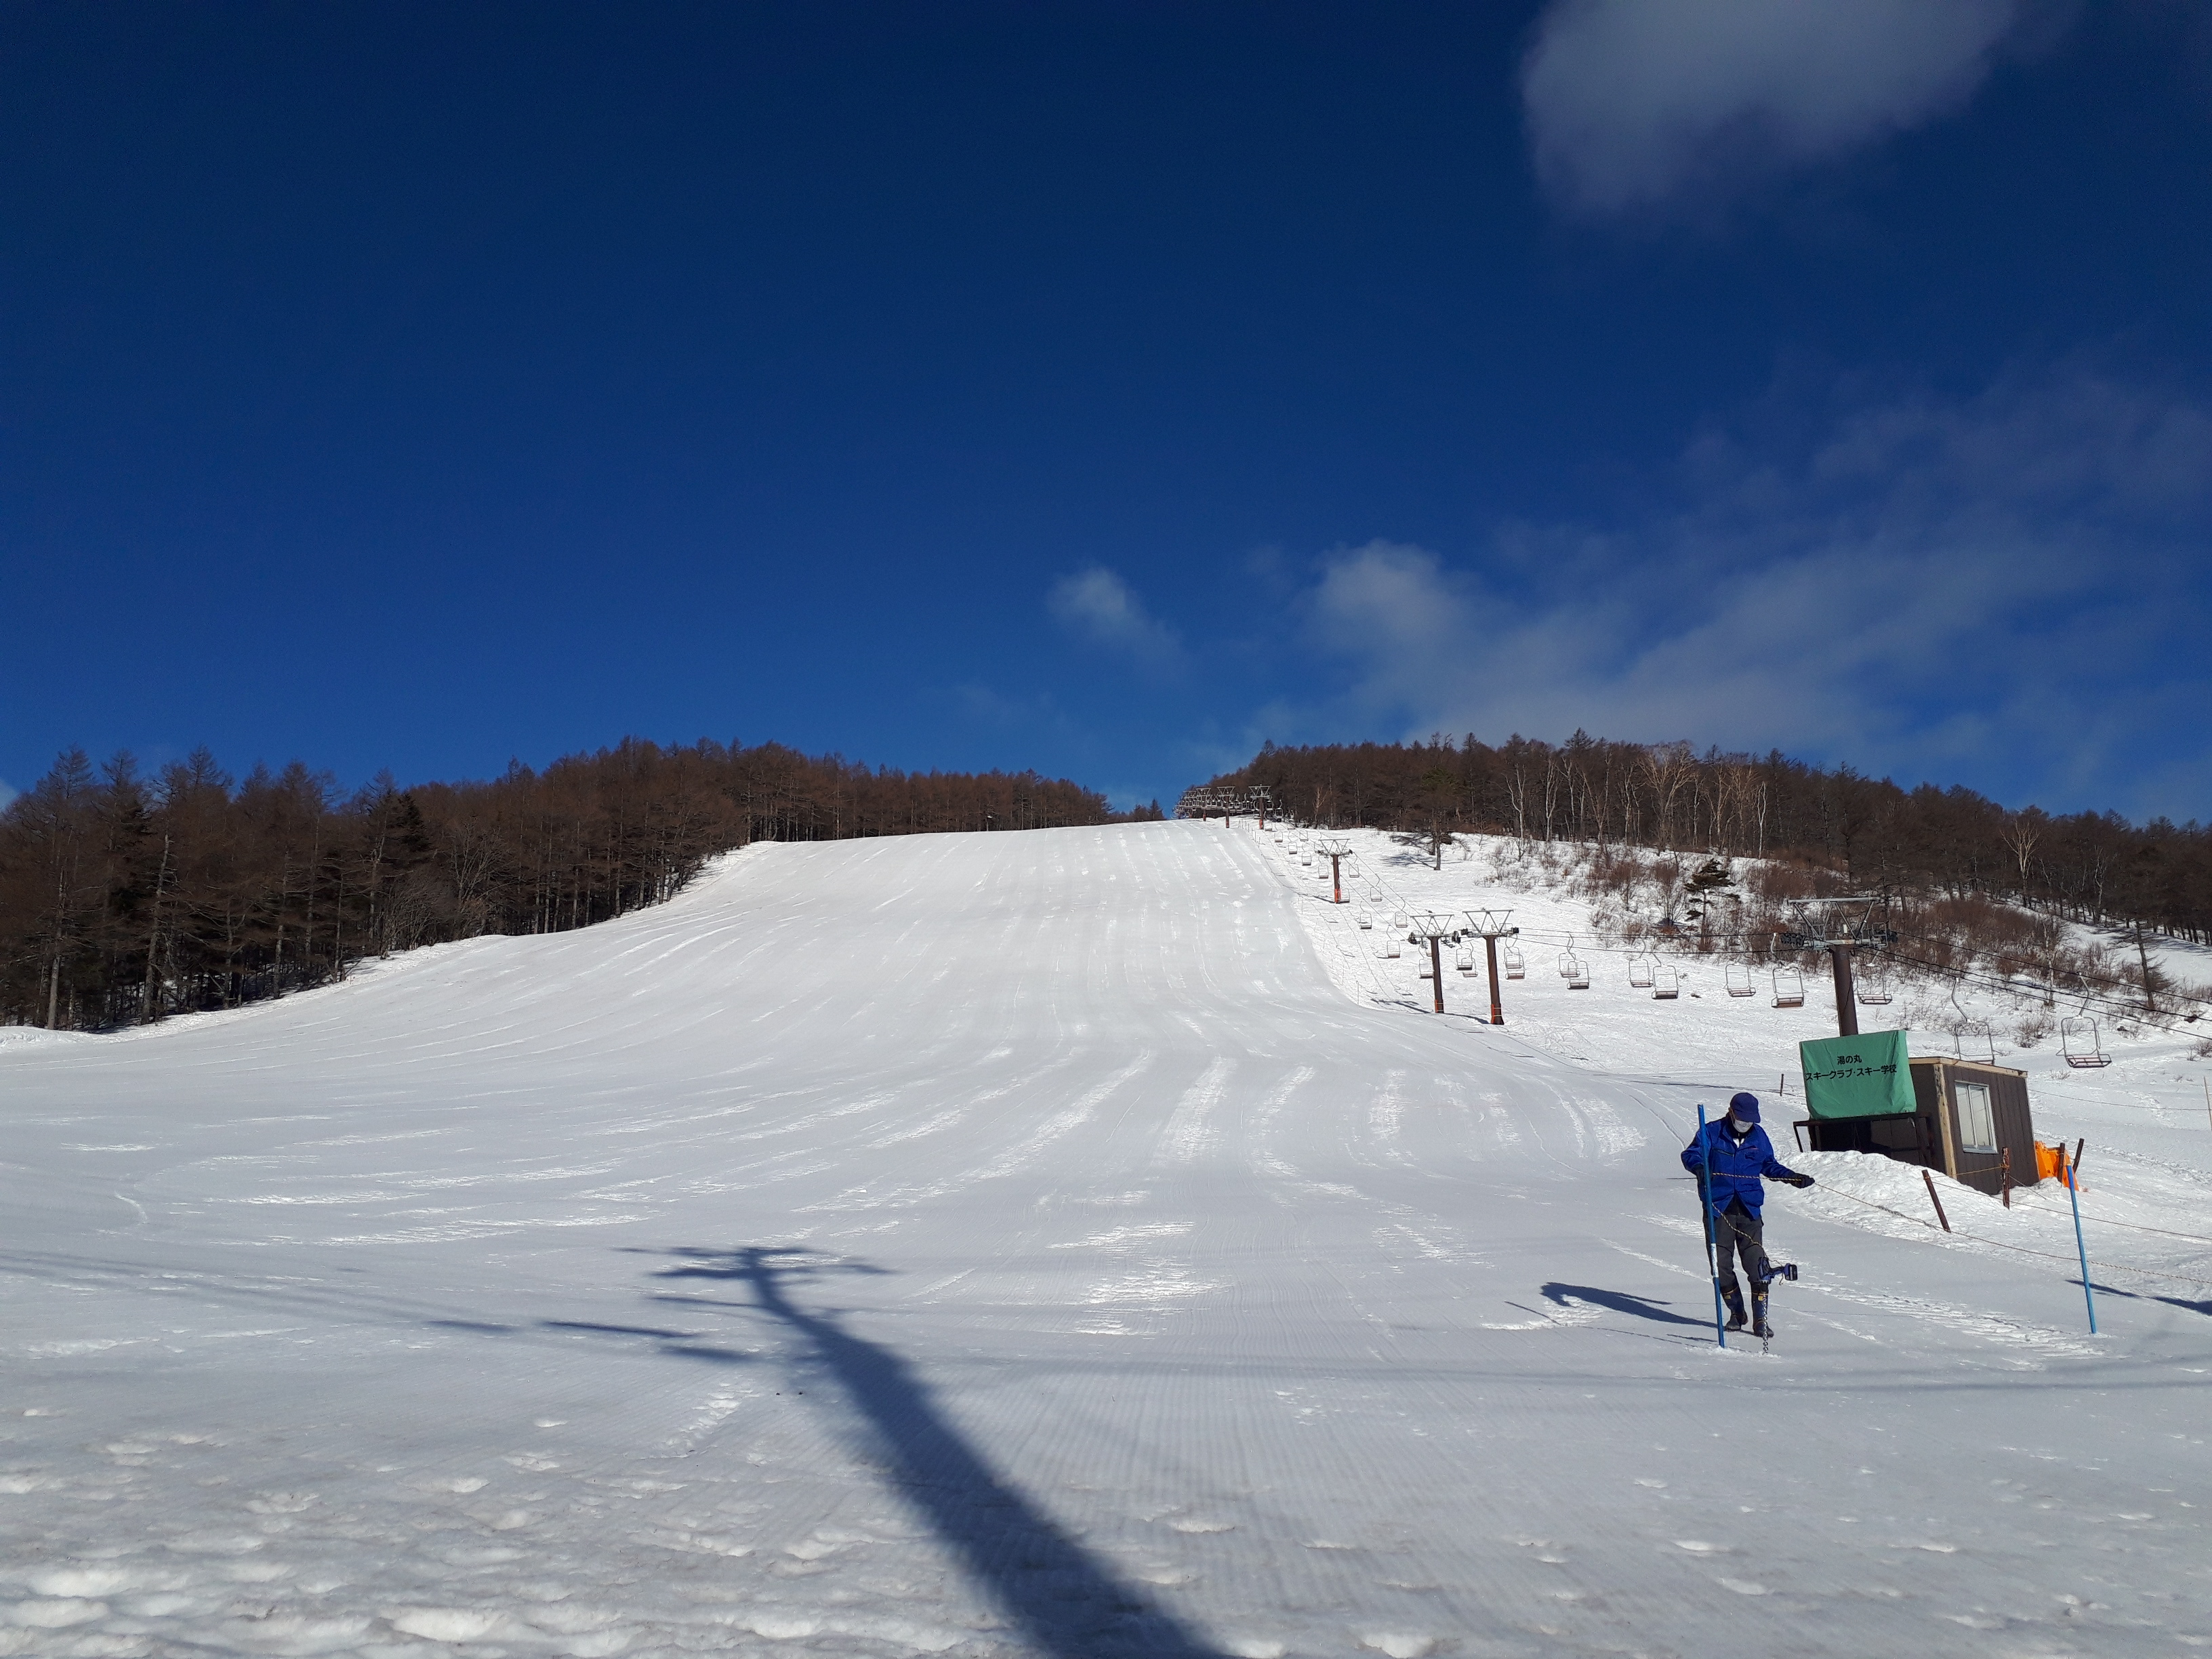 湯の丸スキー場 暖かな日が続いてます 3月14日月曜日8 10現在 気温 5度 晴 風なしです 昨晩は雨が降る時間がありました 8 30からリフト運転 本日と明日3 15は第2 第3リフトが運休です ゲレンデはしまった圧雪バーン 春スキー スノーボードを